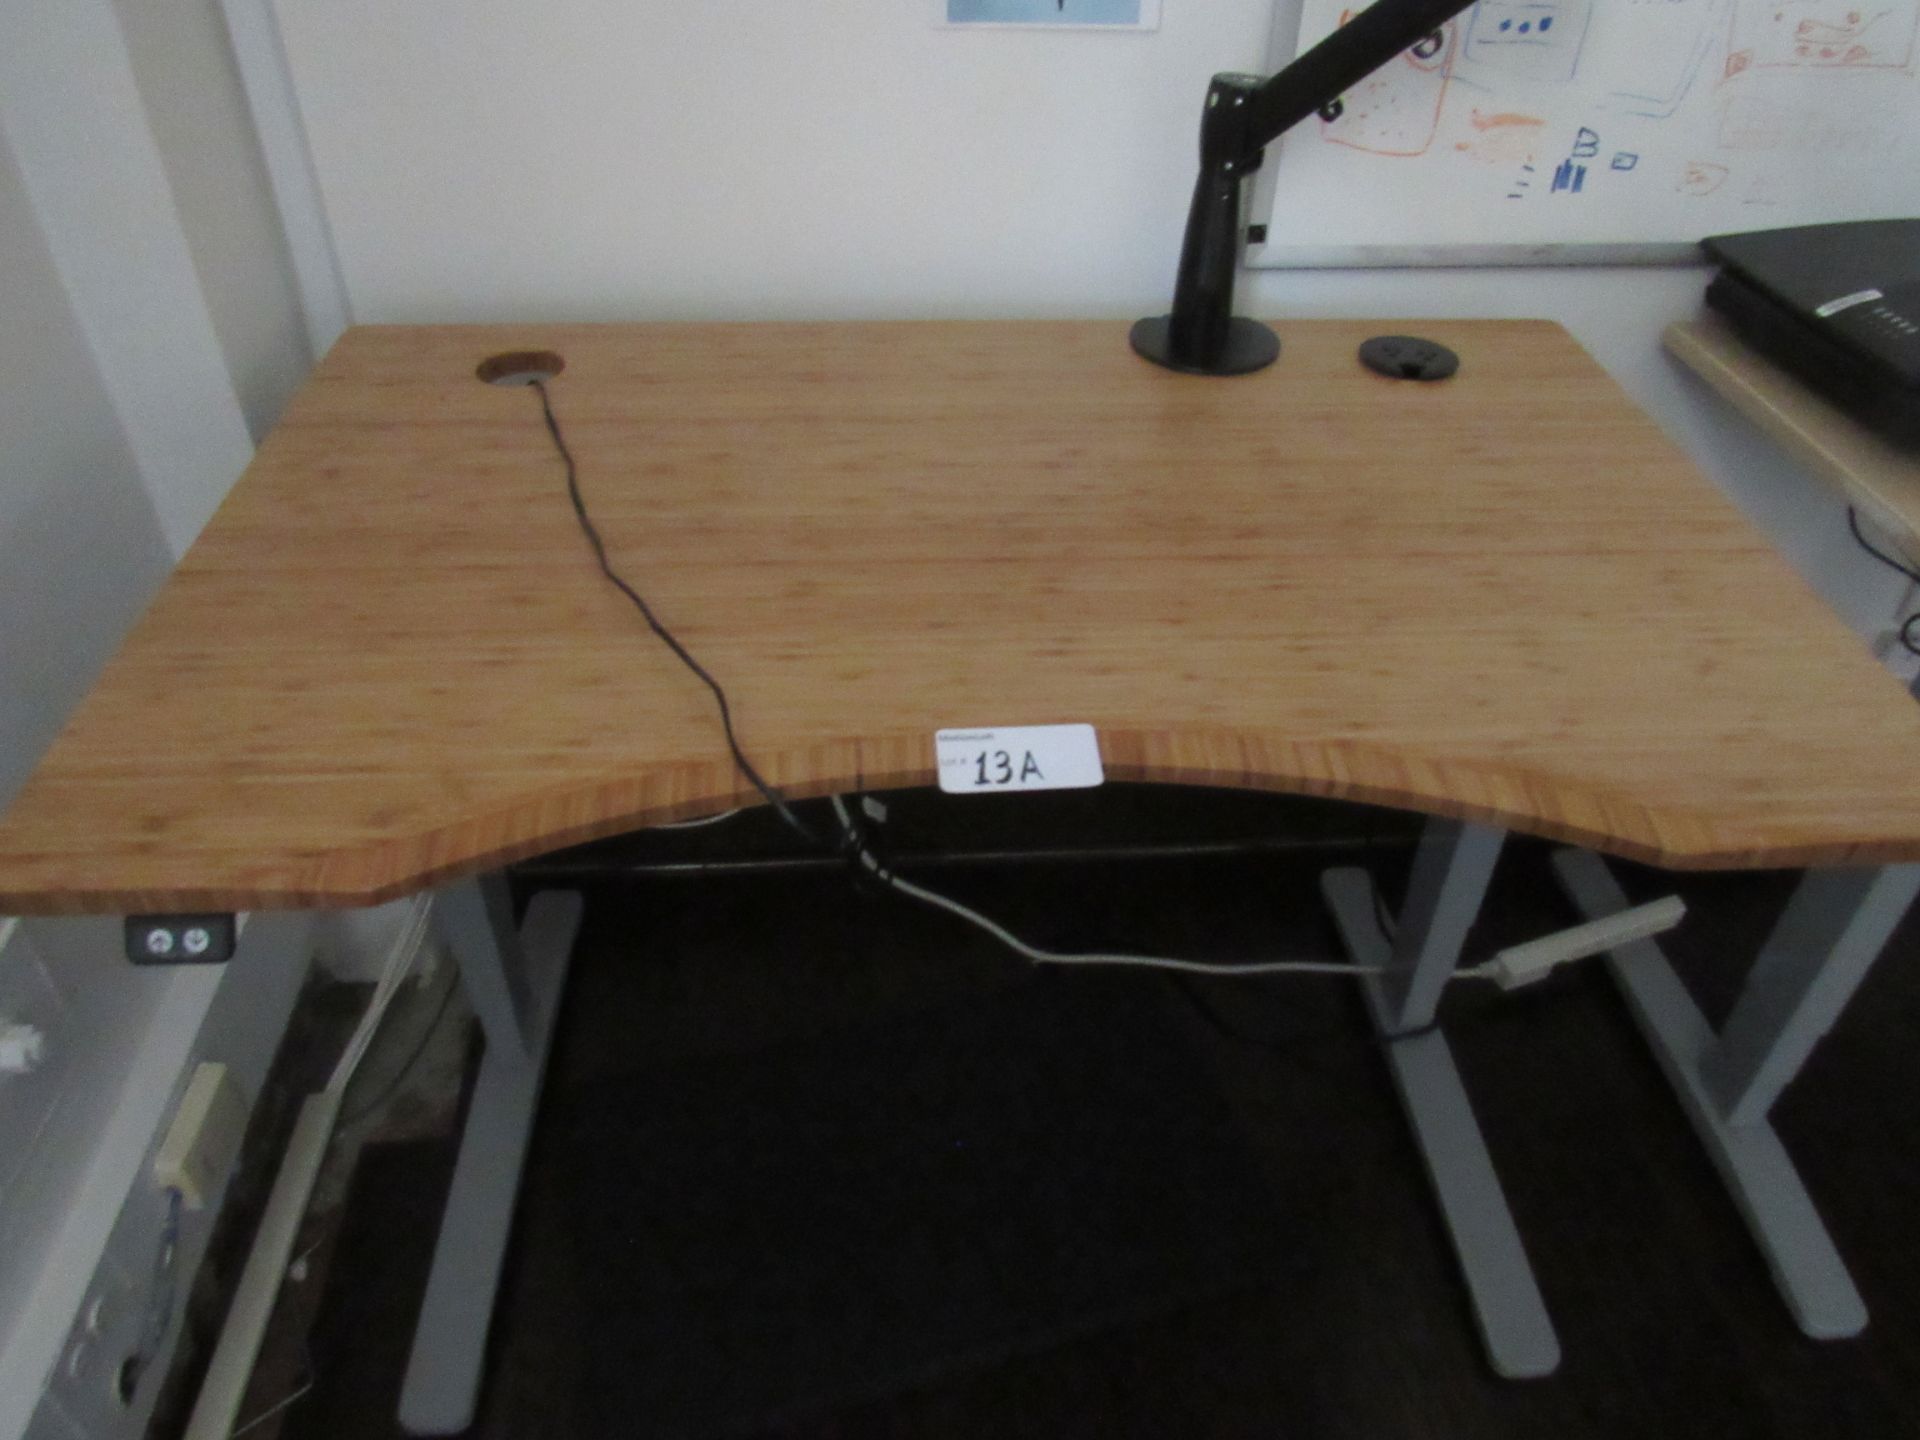 Lot of Assorted Desks & Tables, 3-Assorted 5'x30" Uplift Desks 2-Lite Wood & 1-Dark Wood,1-Four